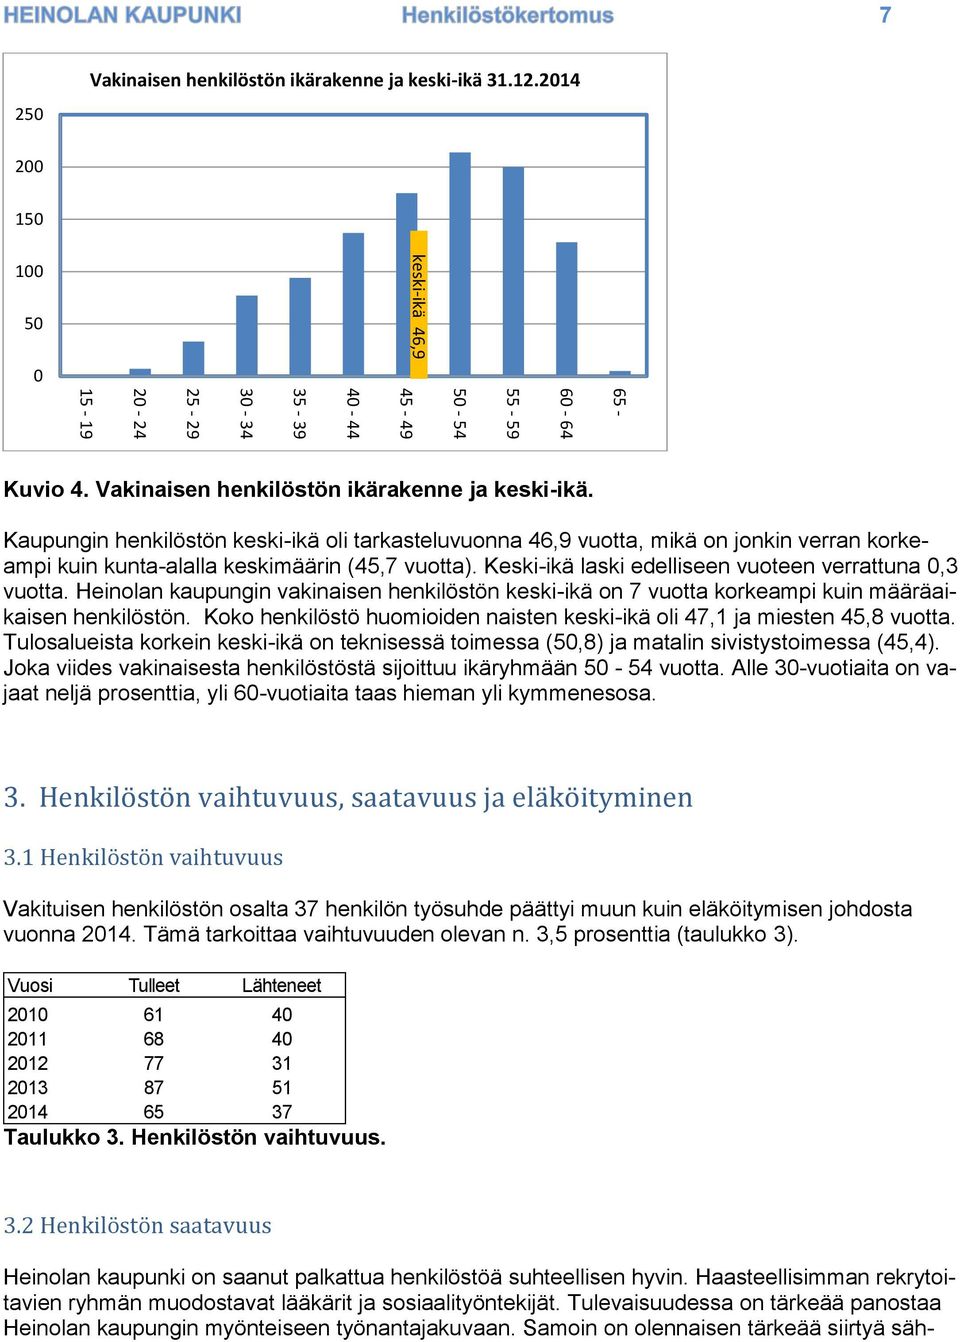 Keski-ikä laski edelliseen vuoteen verrattuna 0,3 vuotta. Heinolan kaupungin vakinaisen henkilöstön keski-ikä on 7 vuotta korkeampi kuin määräaikaisen henkilöstön.